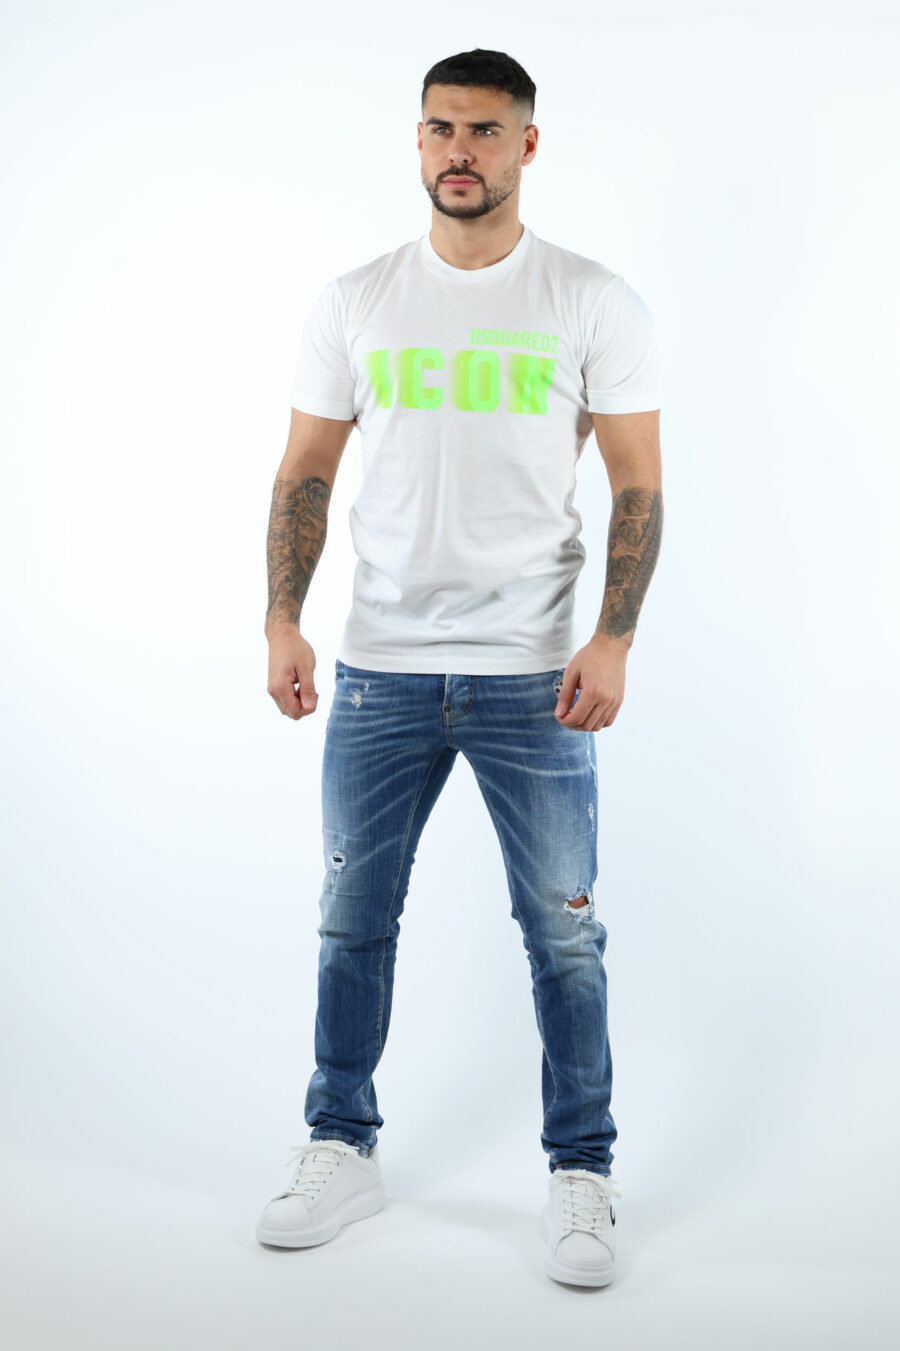 Weißes T-Shirt mit "Icon" Maxilogo neongrün verwischt - 106631